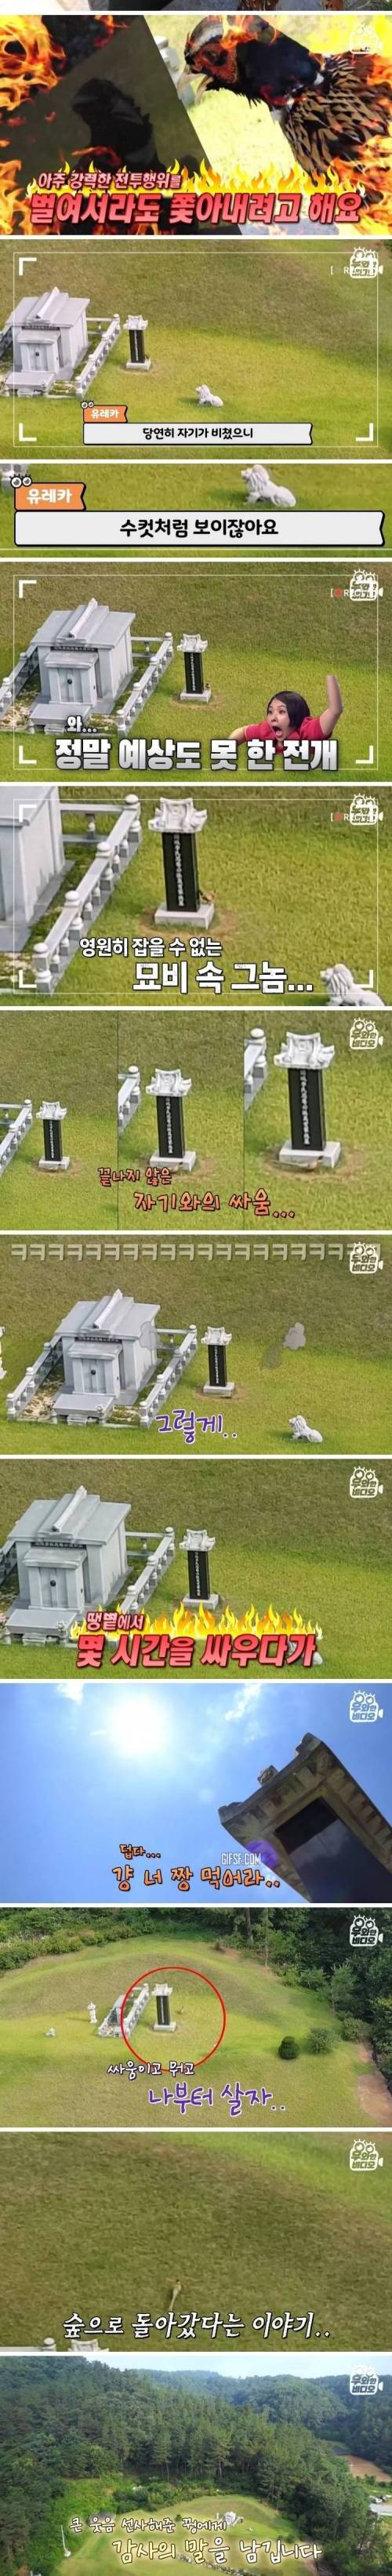 [스압] 가족묘 주변에 생긴 발자취 묘비 미스터리.jpg